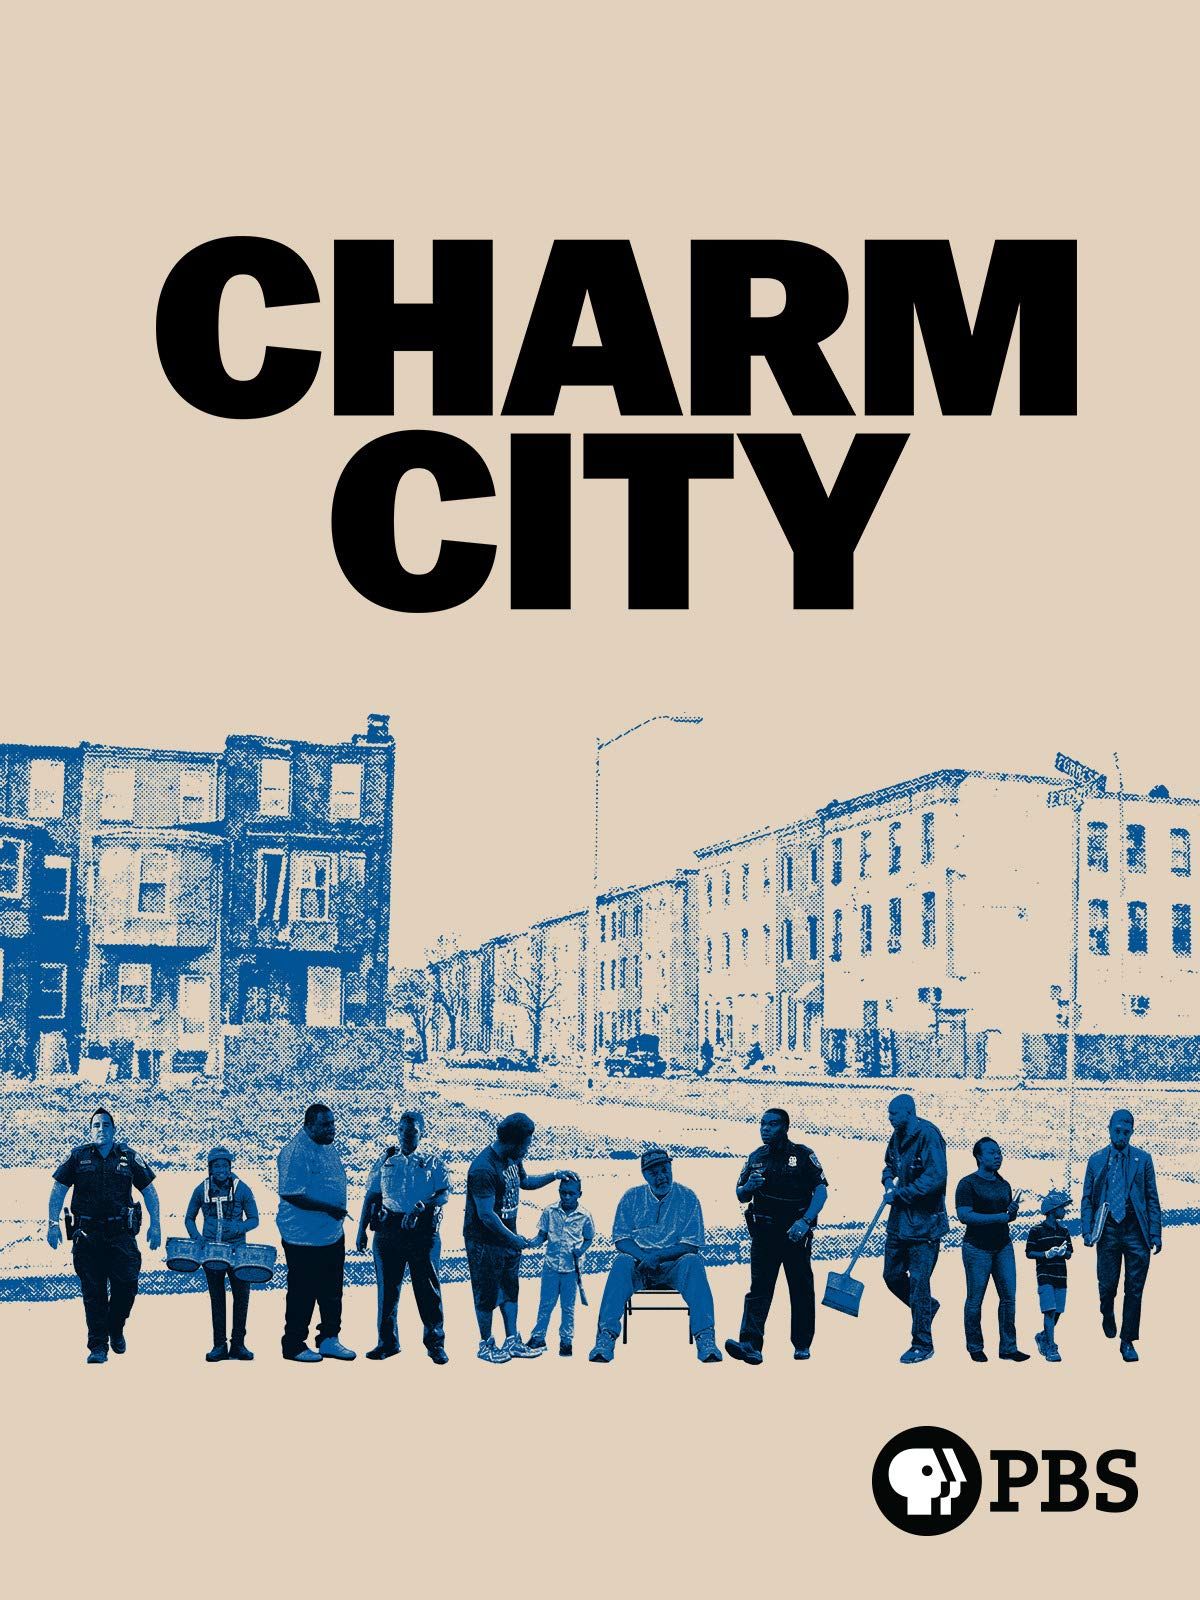 Charm City Kings - Bell Media